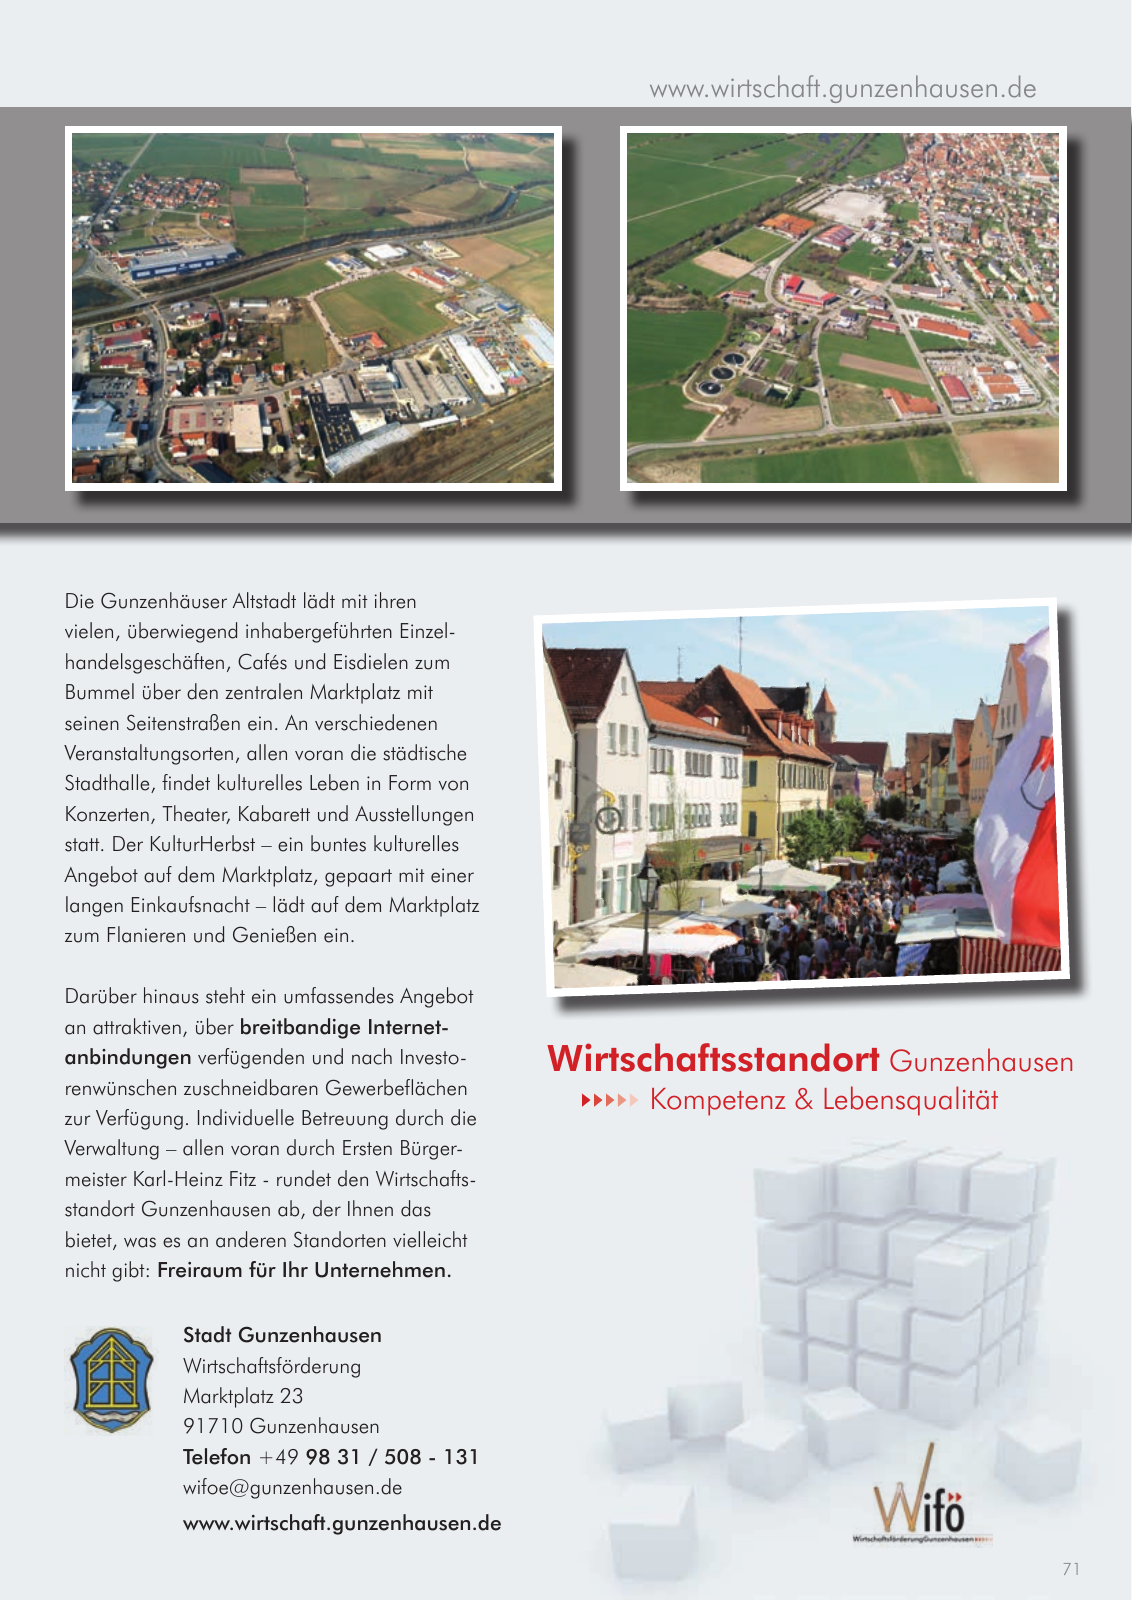 Vorschau leben & arbeiten in Gunzenhausen - 2015 Seite 71